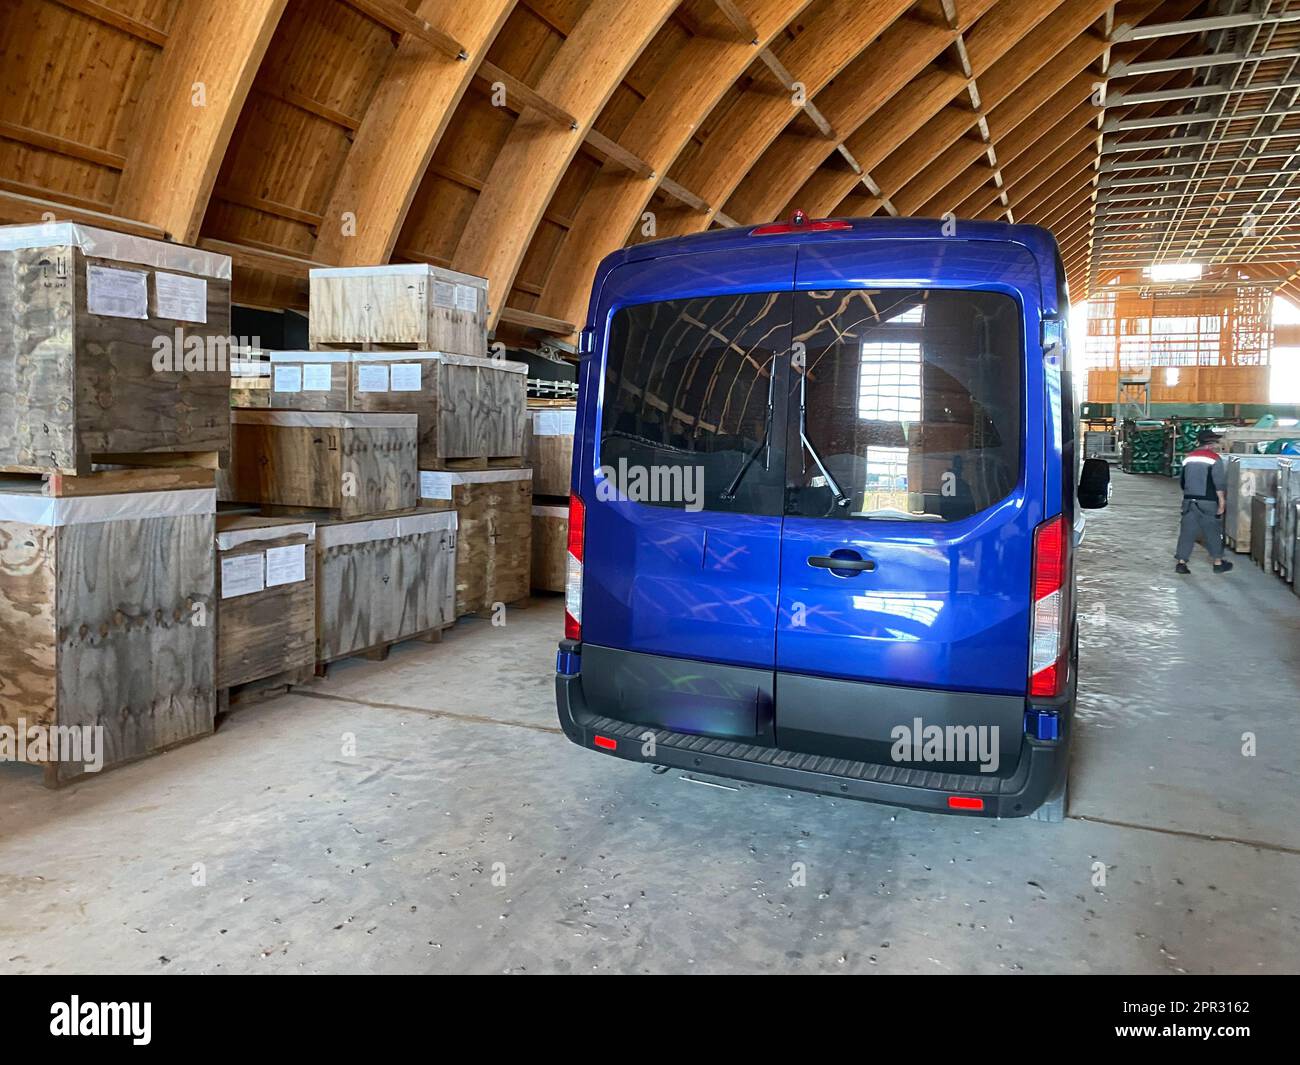 Un minibus bleu dans un entrepôt pour l'équipement et les matériaux industriels. Concept : livraison, logistique, incoterms dap, conditions de livraison dpp. Banque D'Images